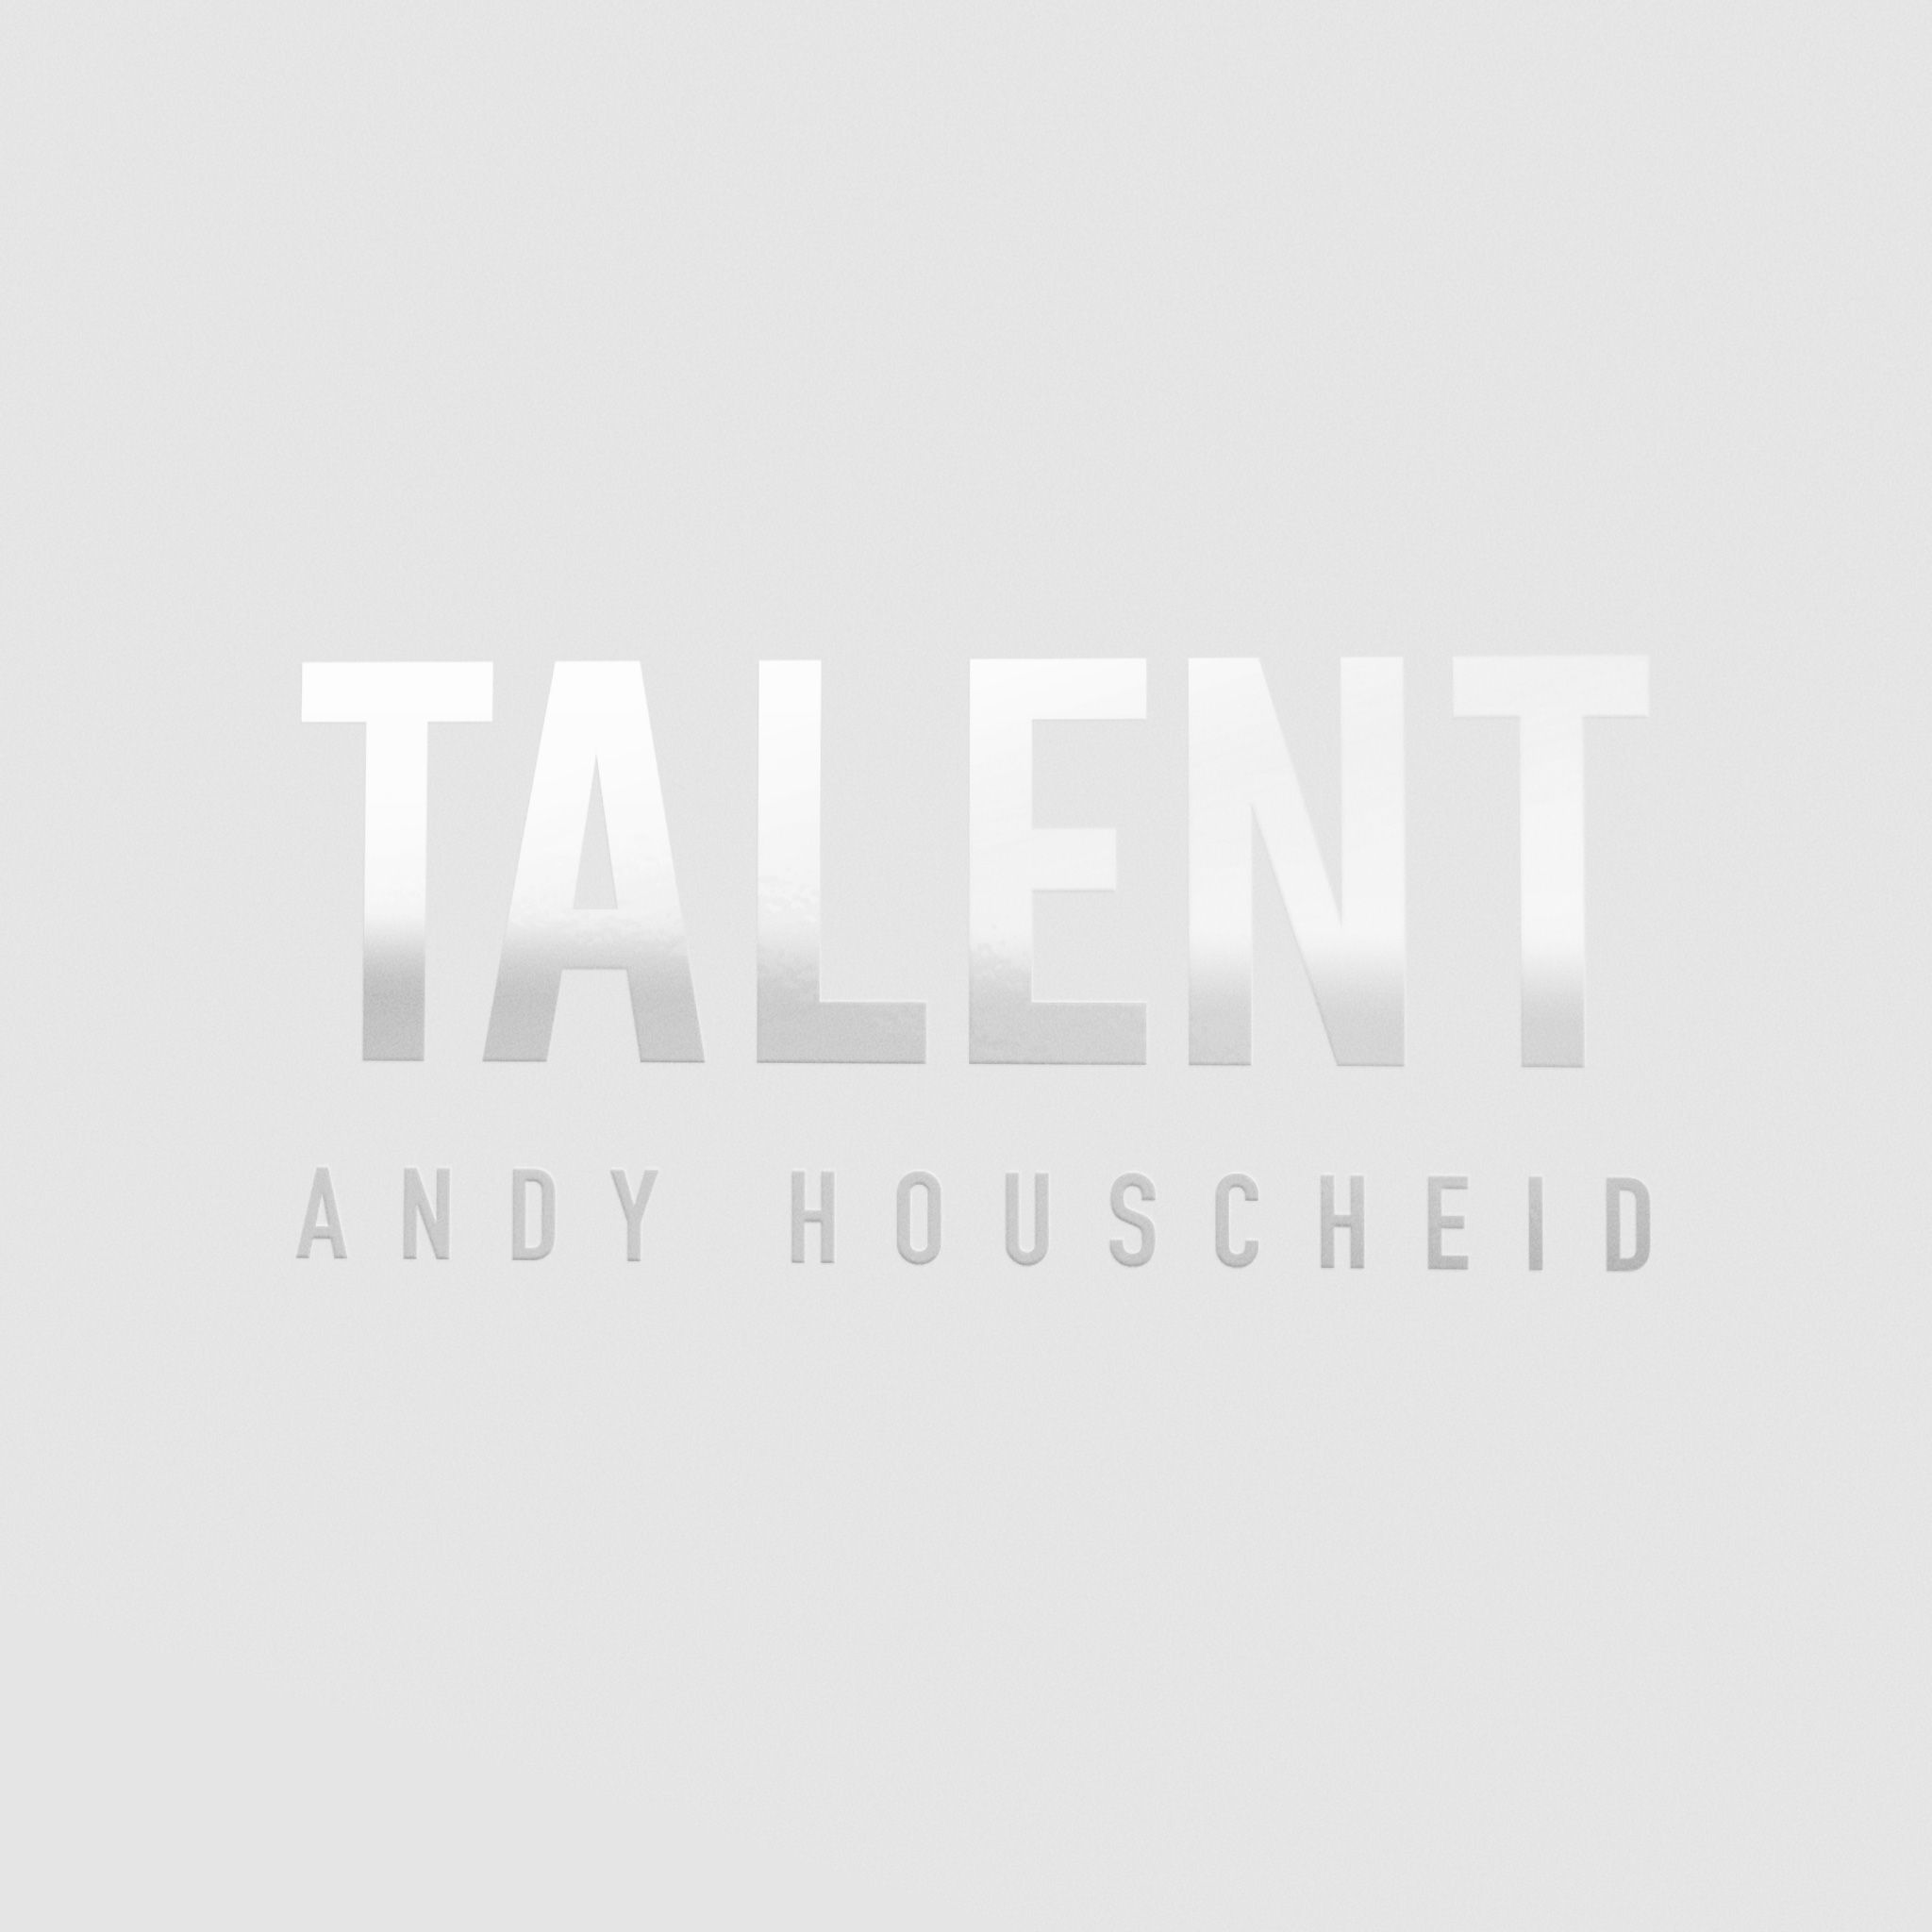 Houscheid, Andy - Talent